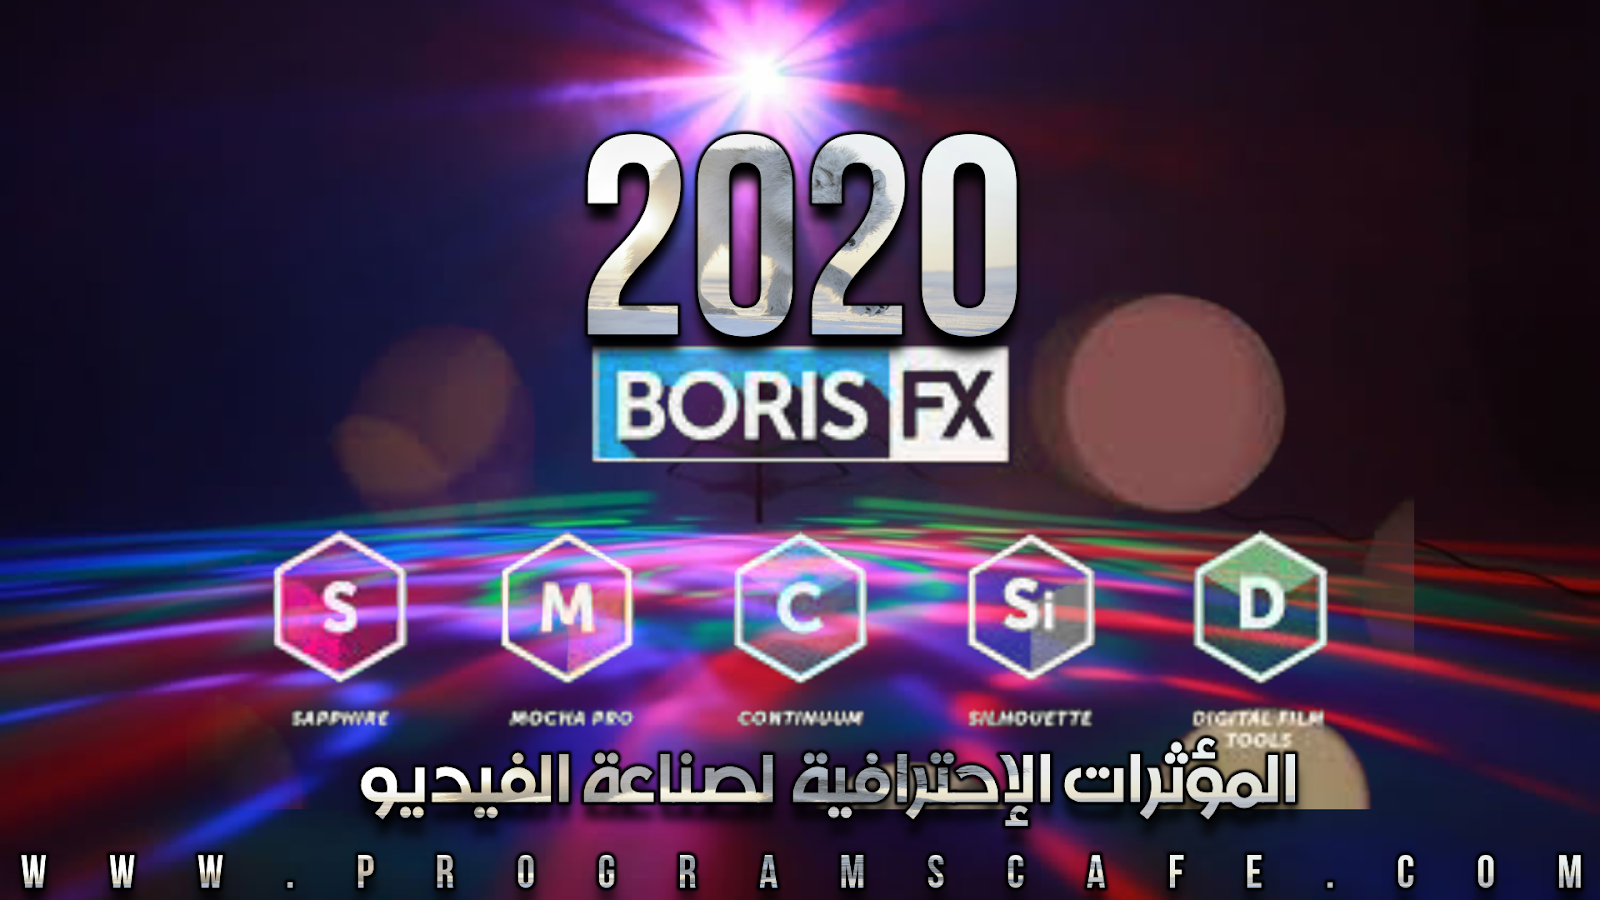 boris continuum 2020 crack mac